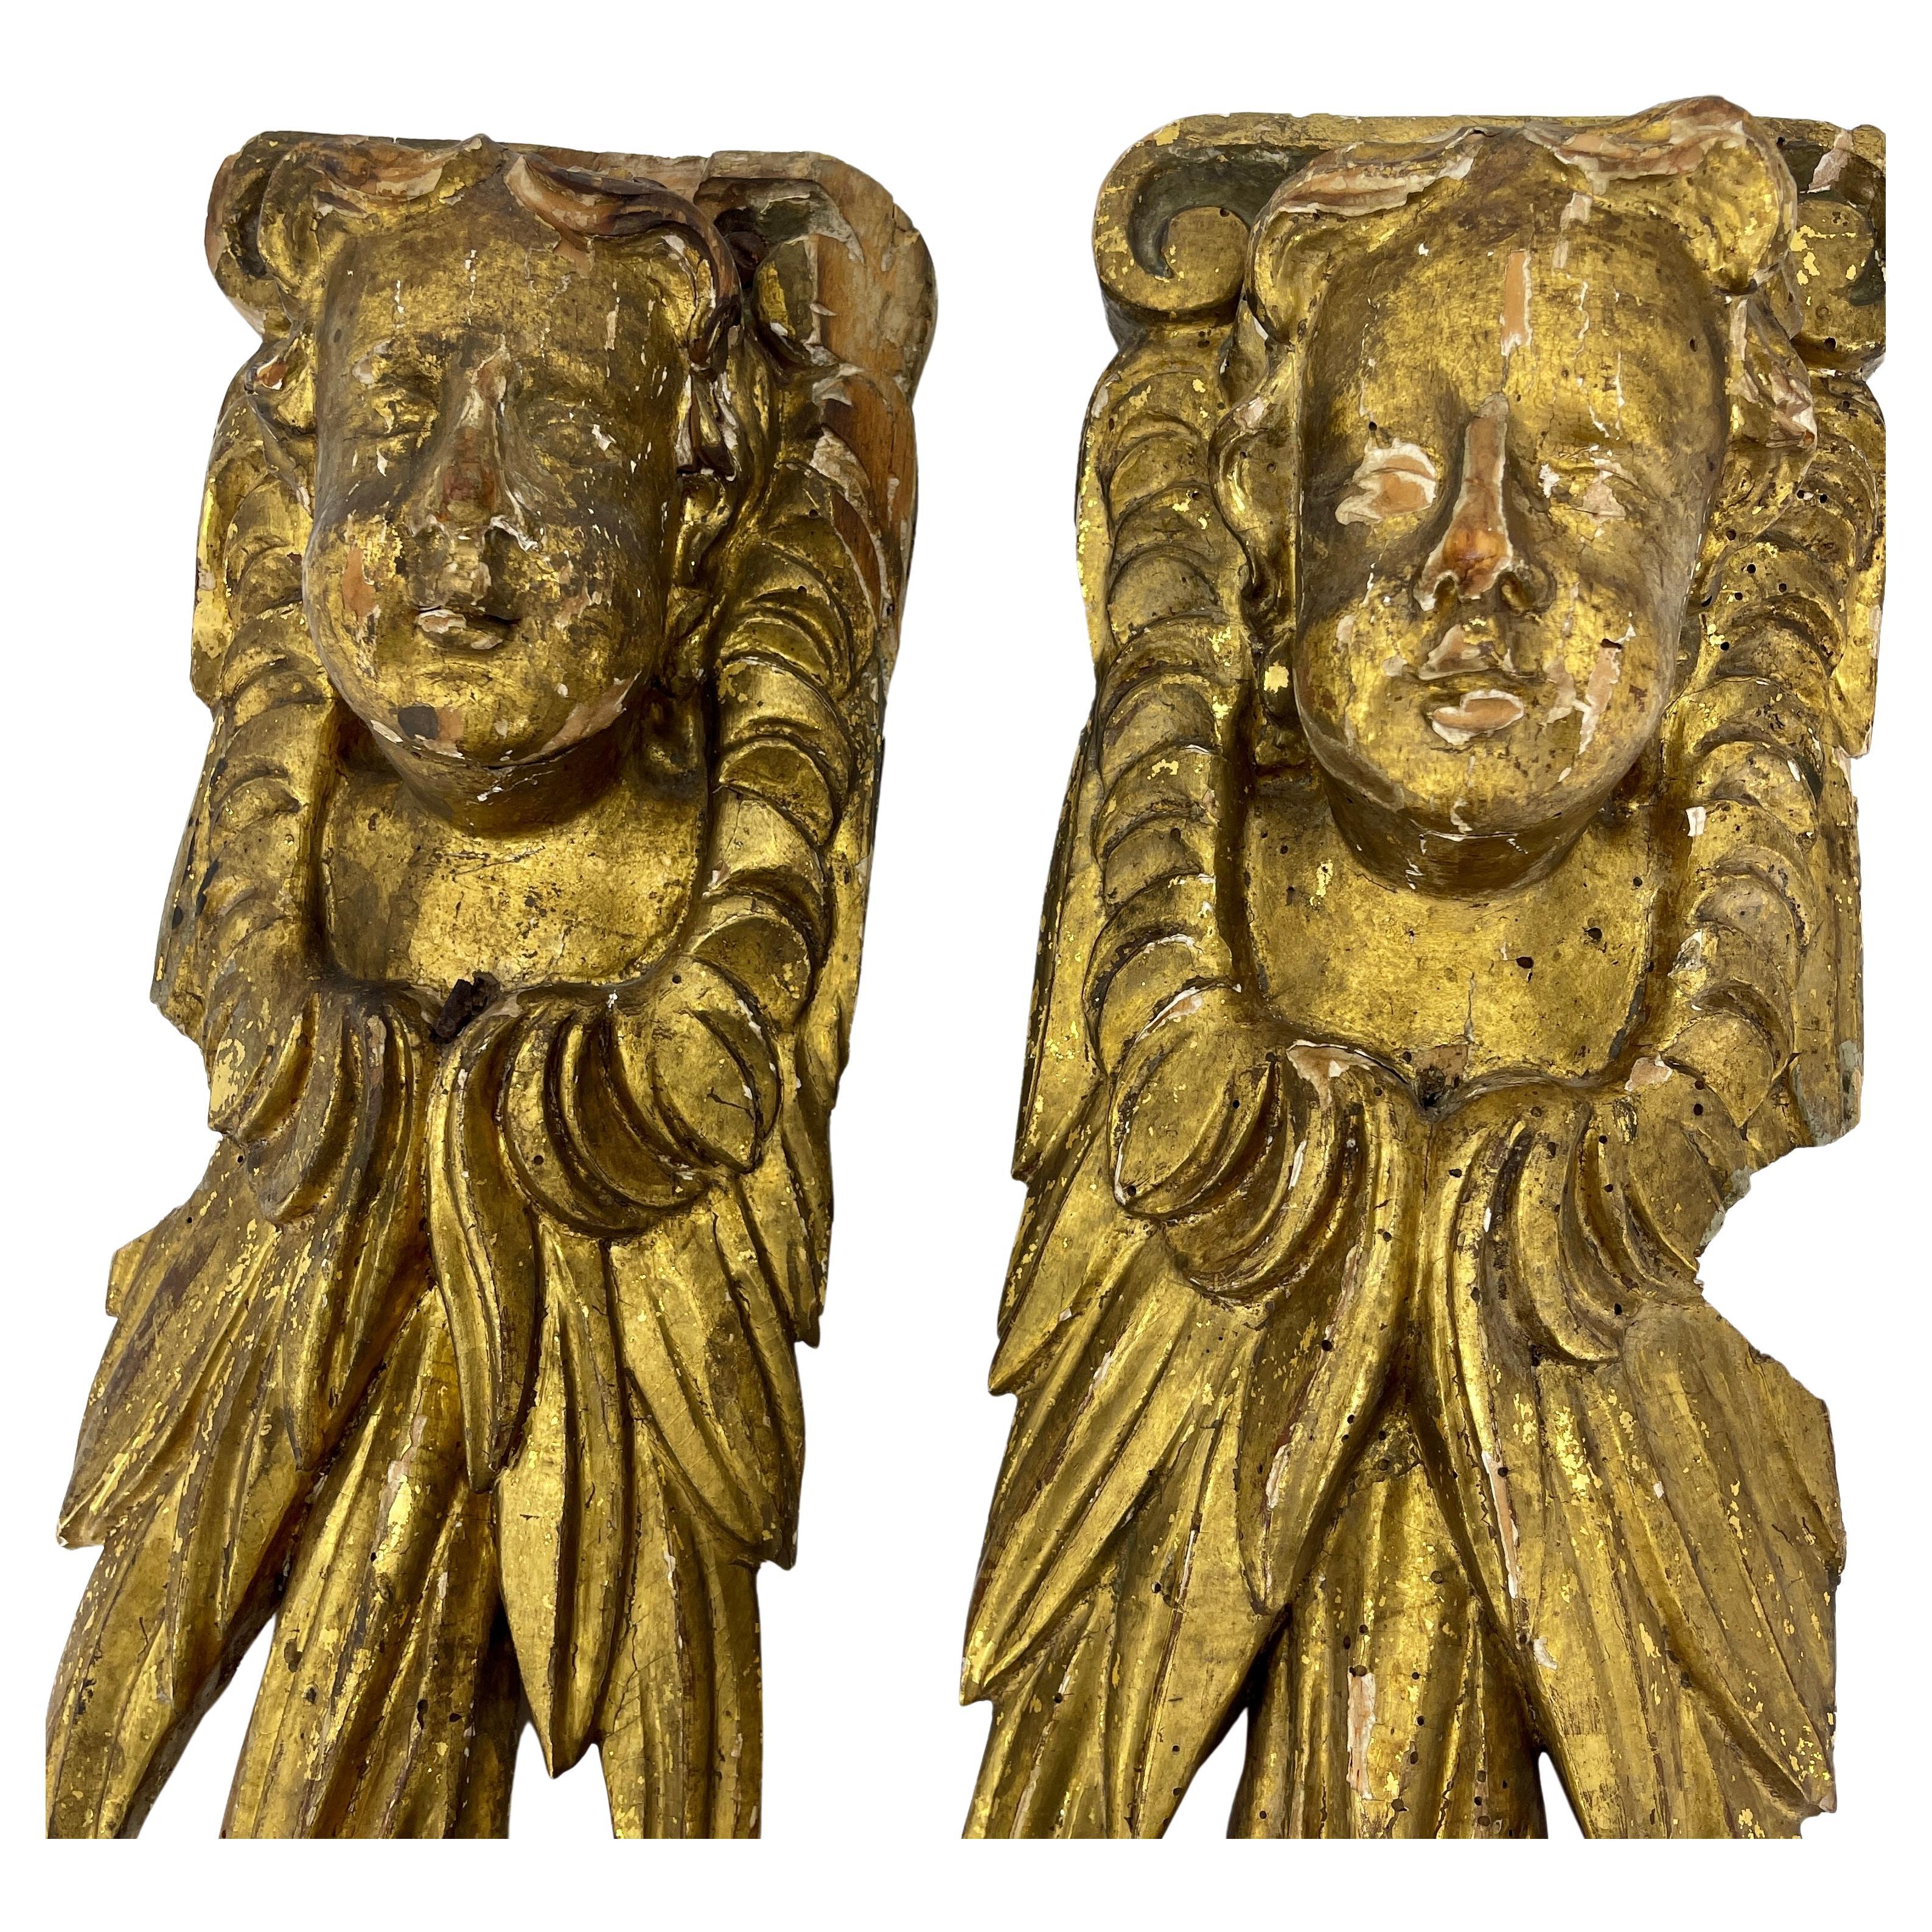 Paire de chérubins figuratifs italiens en bois doré, sculptures architecturales sur pilastre, de style baroque, vers 1740.
Notez que les visages de ces sculptures sont sculptés individuellement pour se regarder les uns les autres. C'est rare car